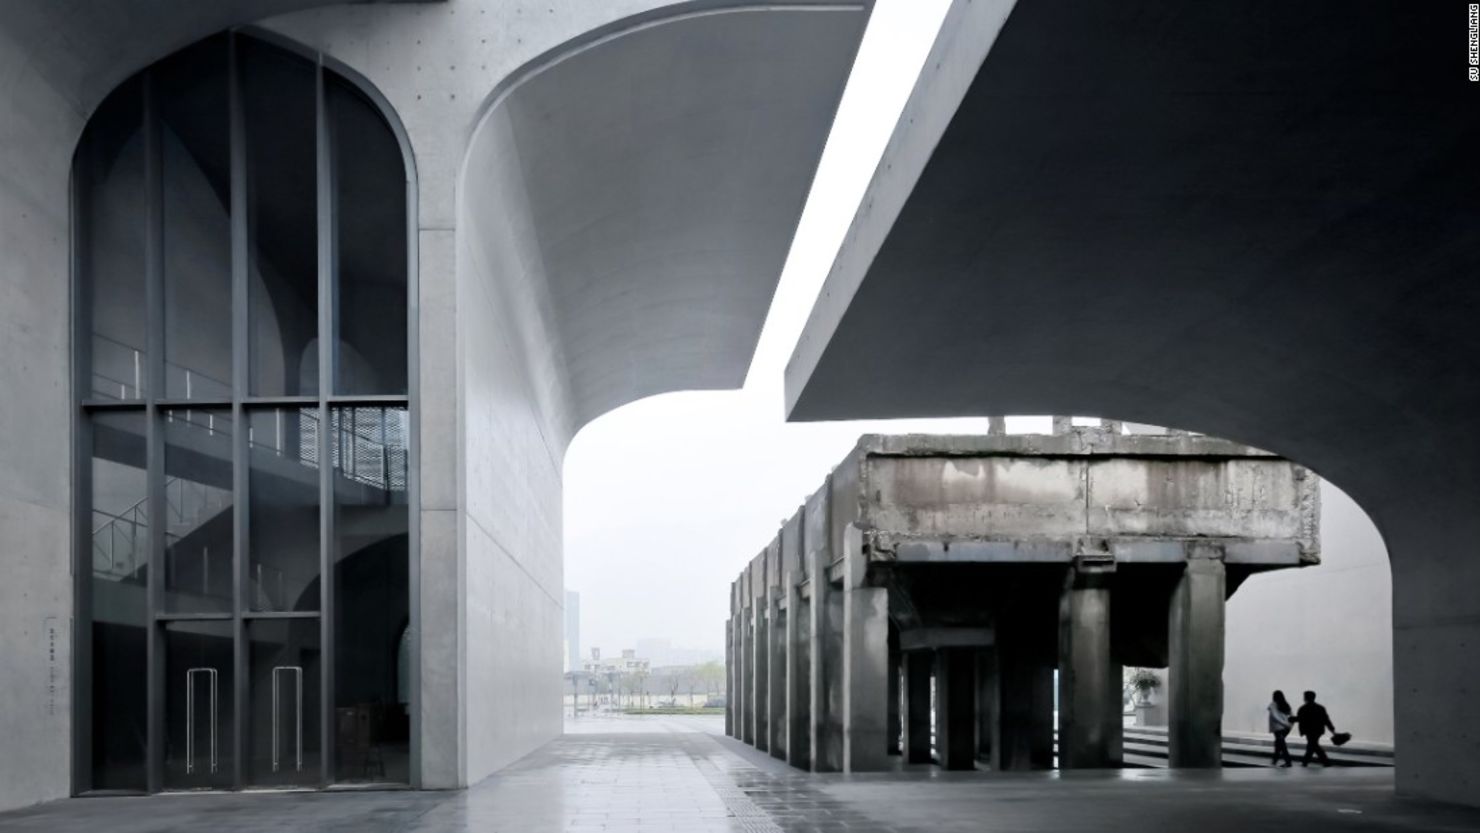 Su Shengliang/Atelier Deshaus - Veinte imágenes fueron preseleccionadas para los premios del Arcaid Images Architectural Photography Awards, en las que aparecen edificios de todo el mundo, como el museo Long West Bund en Shanghái.